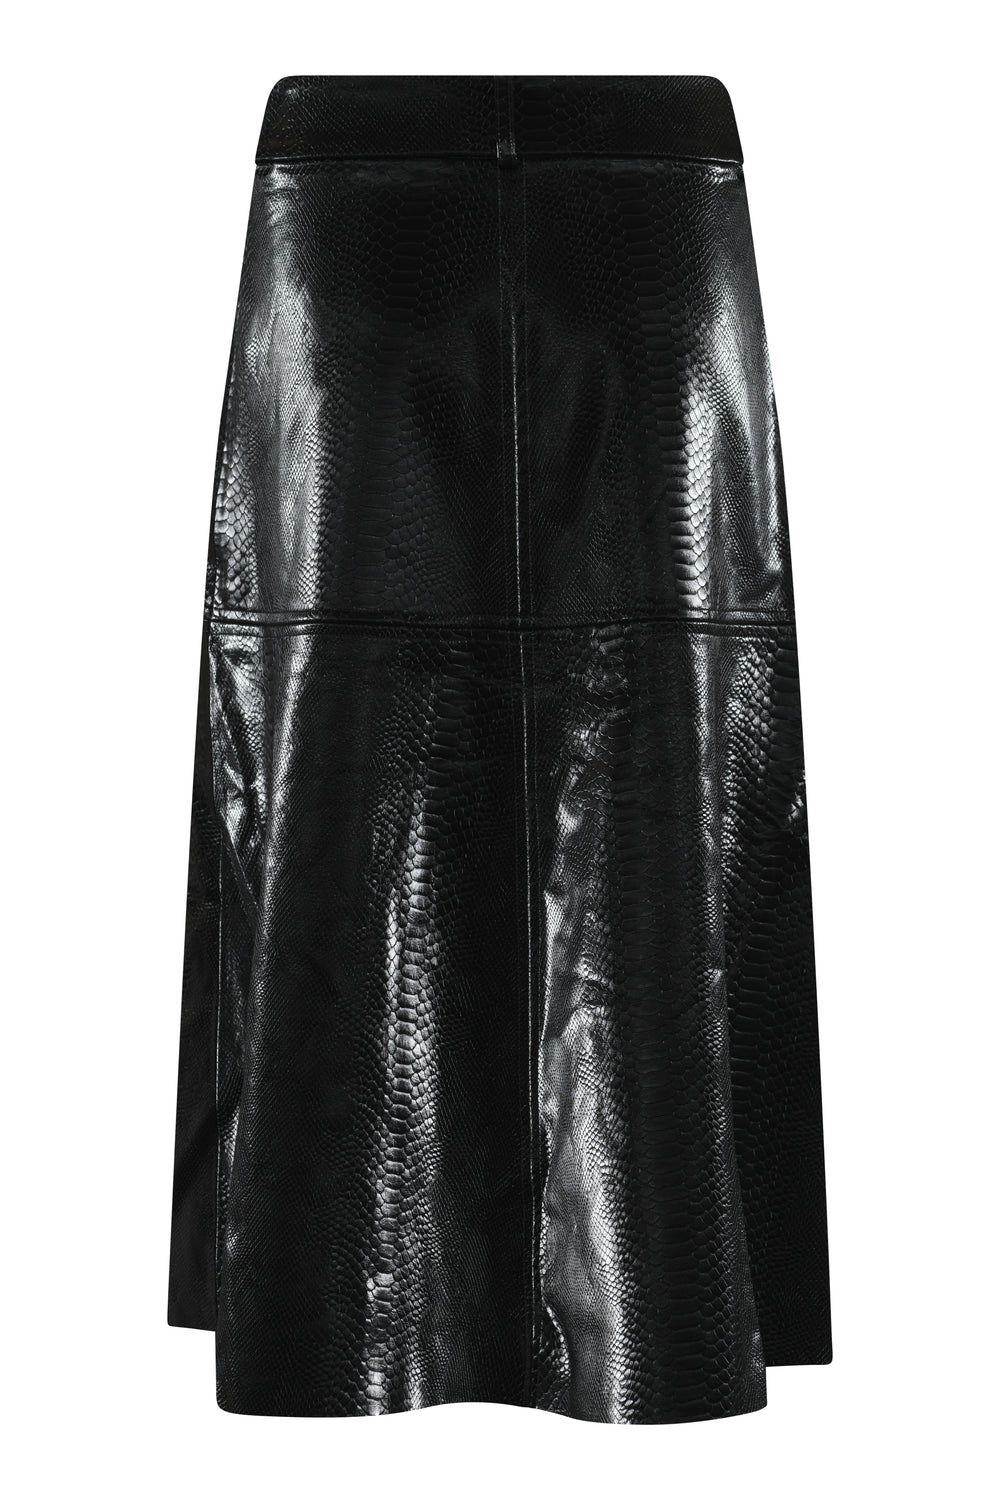 Bruuns Bazaar Women VeganiBBImmali skirt Skirt Black